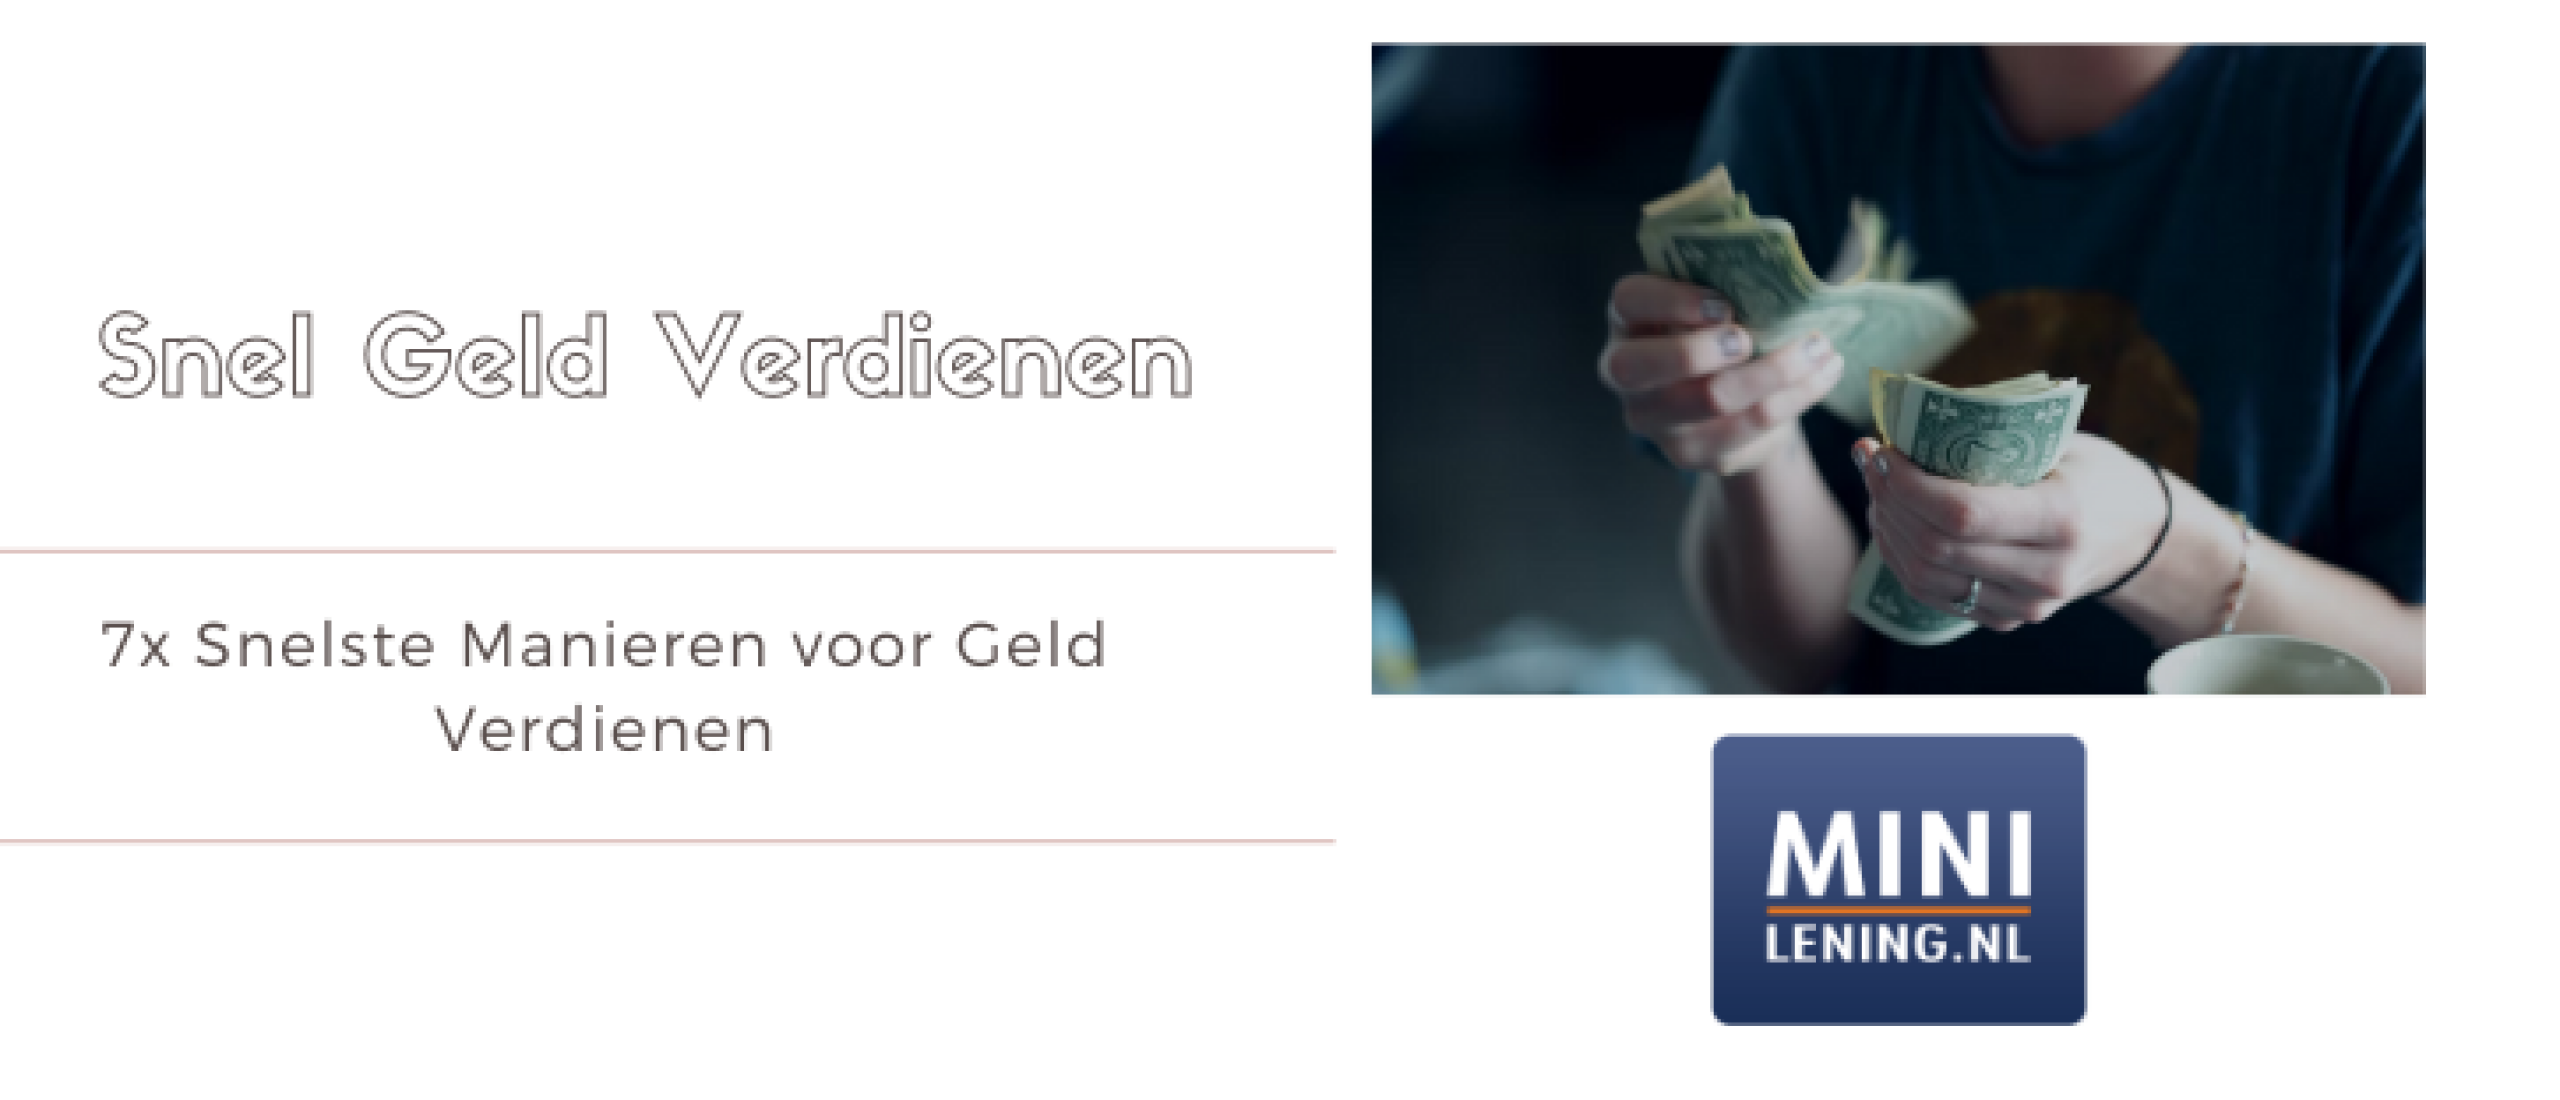 7x Snelste Manieren voor Geld Verdienen (Bewezen) | Minilening.nl